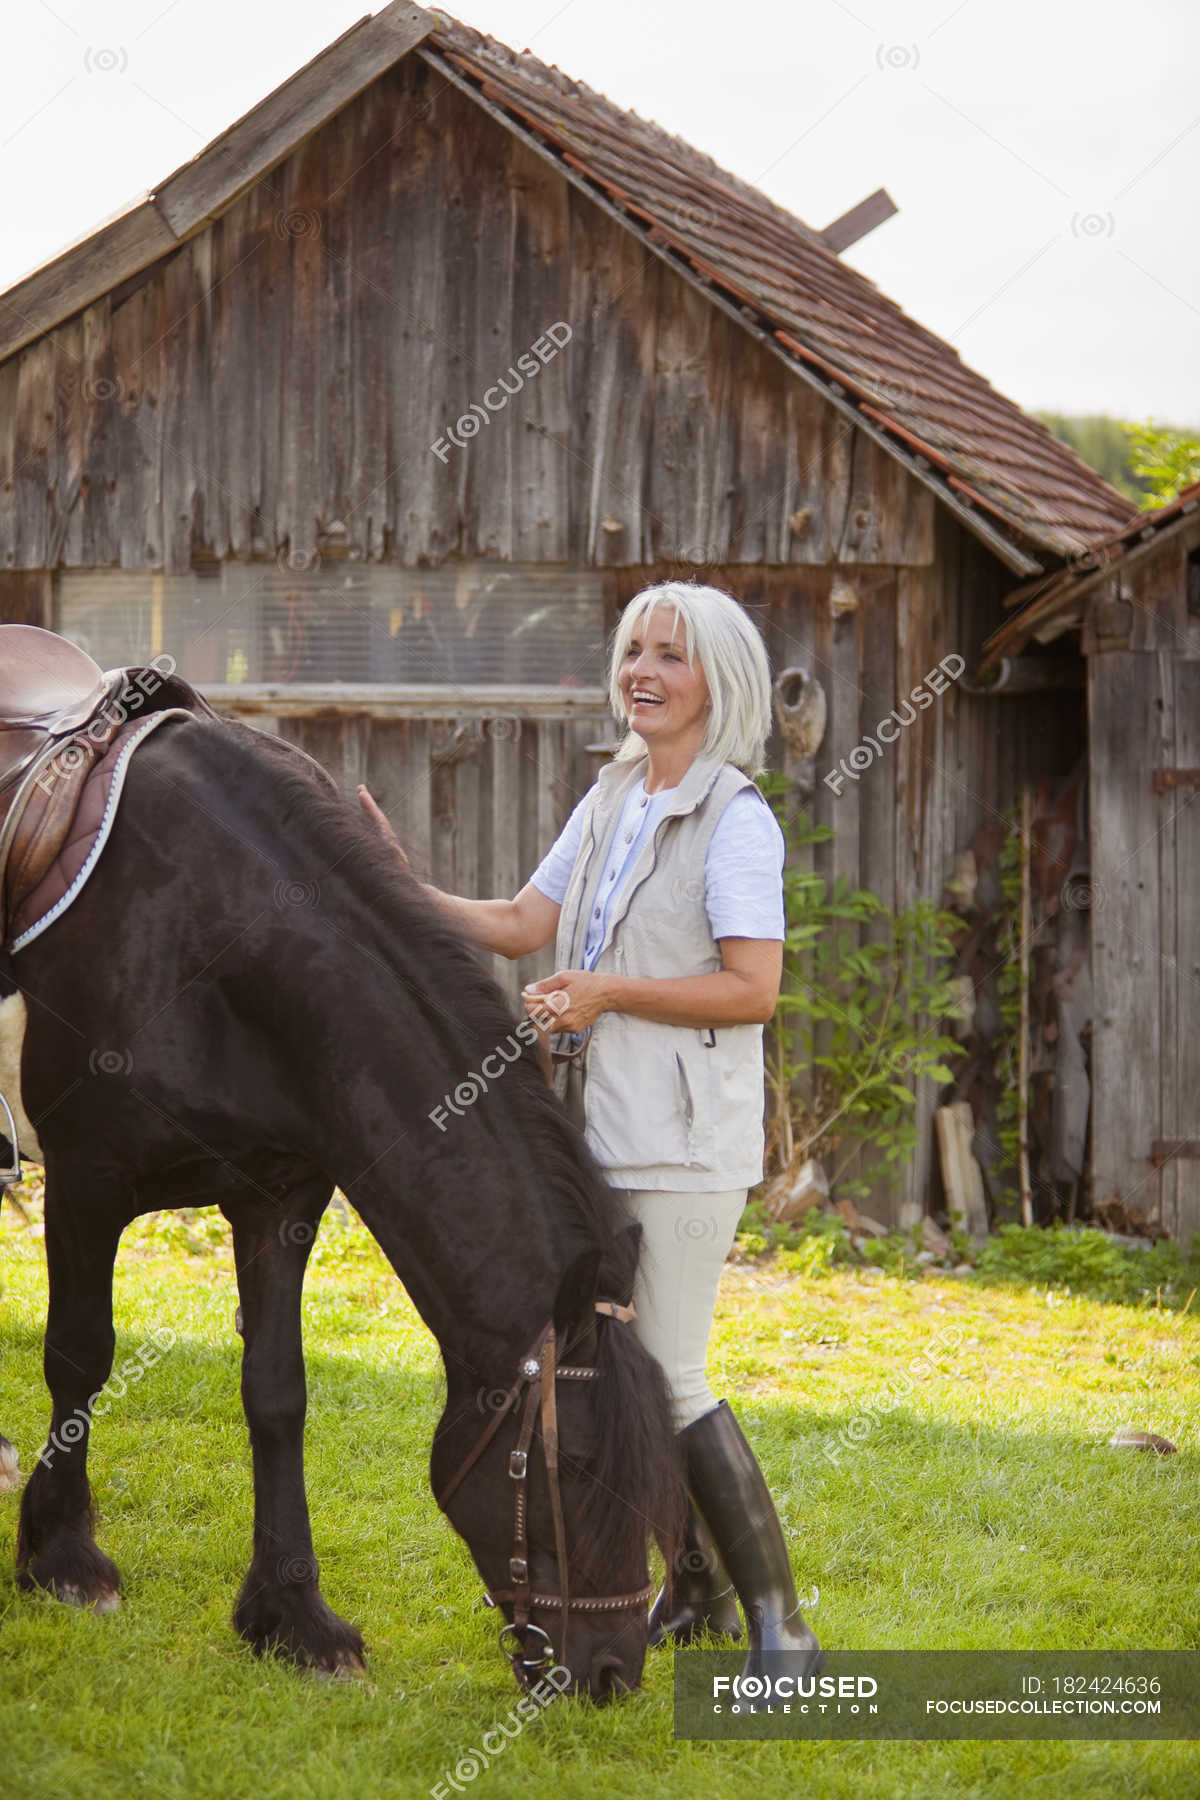 Mujer madura con caballo — vida en el campo, animal doméstico - Stock Photo  | #182424636